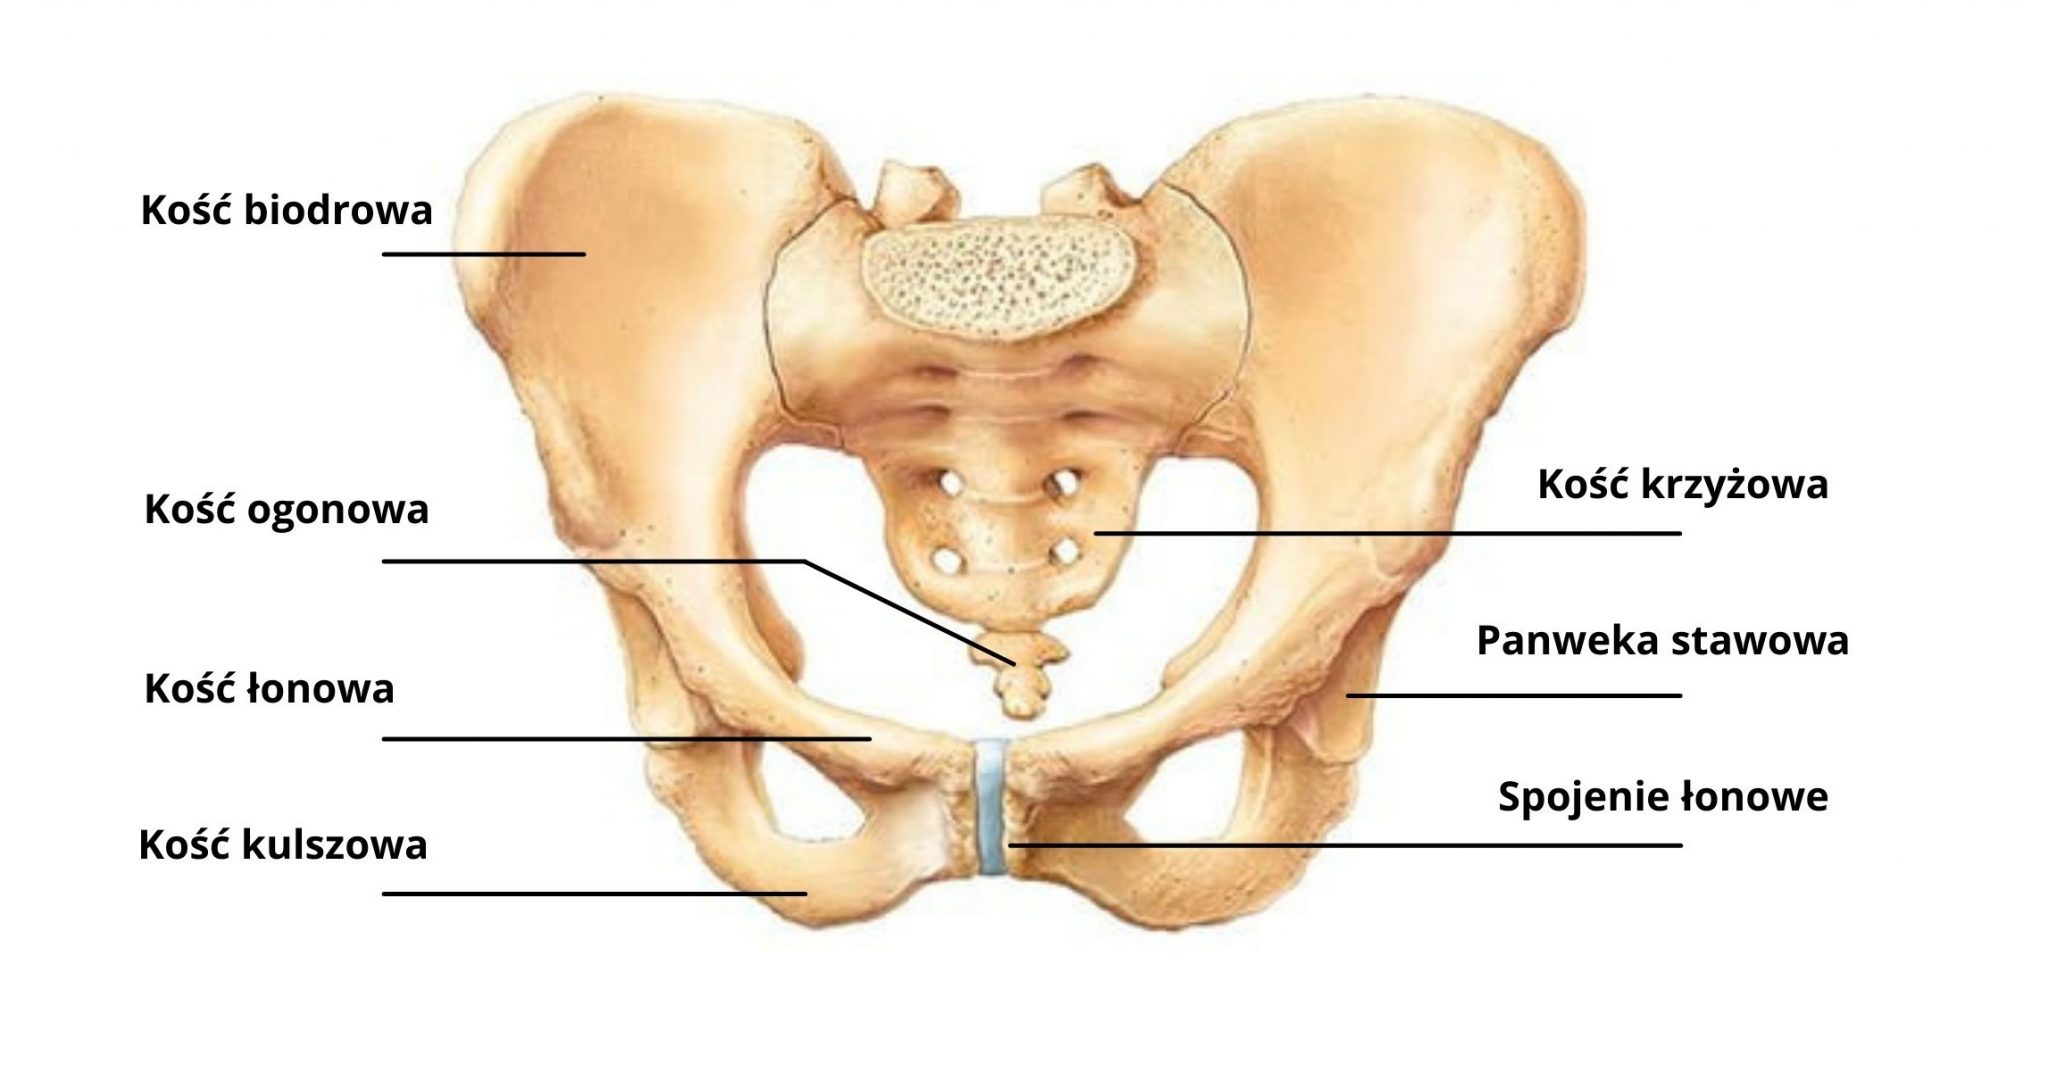 Костный мозг подвздошной кости. Кости таза лонная кость анатомия. Анатомия костей таза лонная кость. Скелет таза и копчика. Подвздошная кость на скелете.